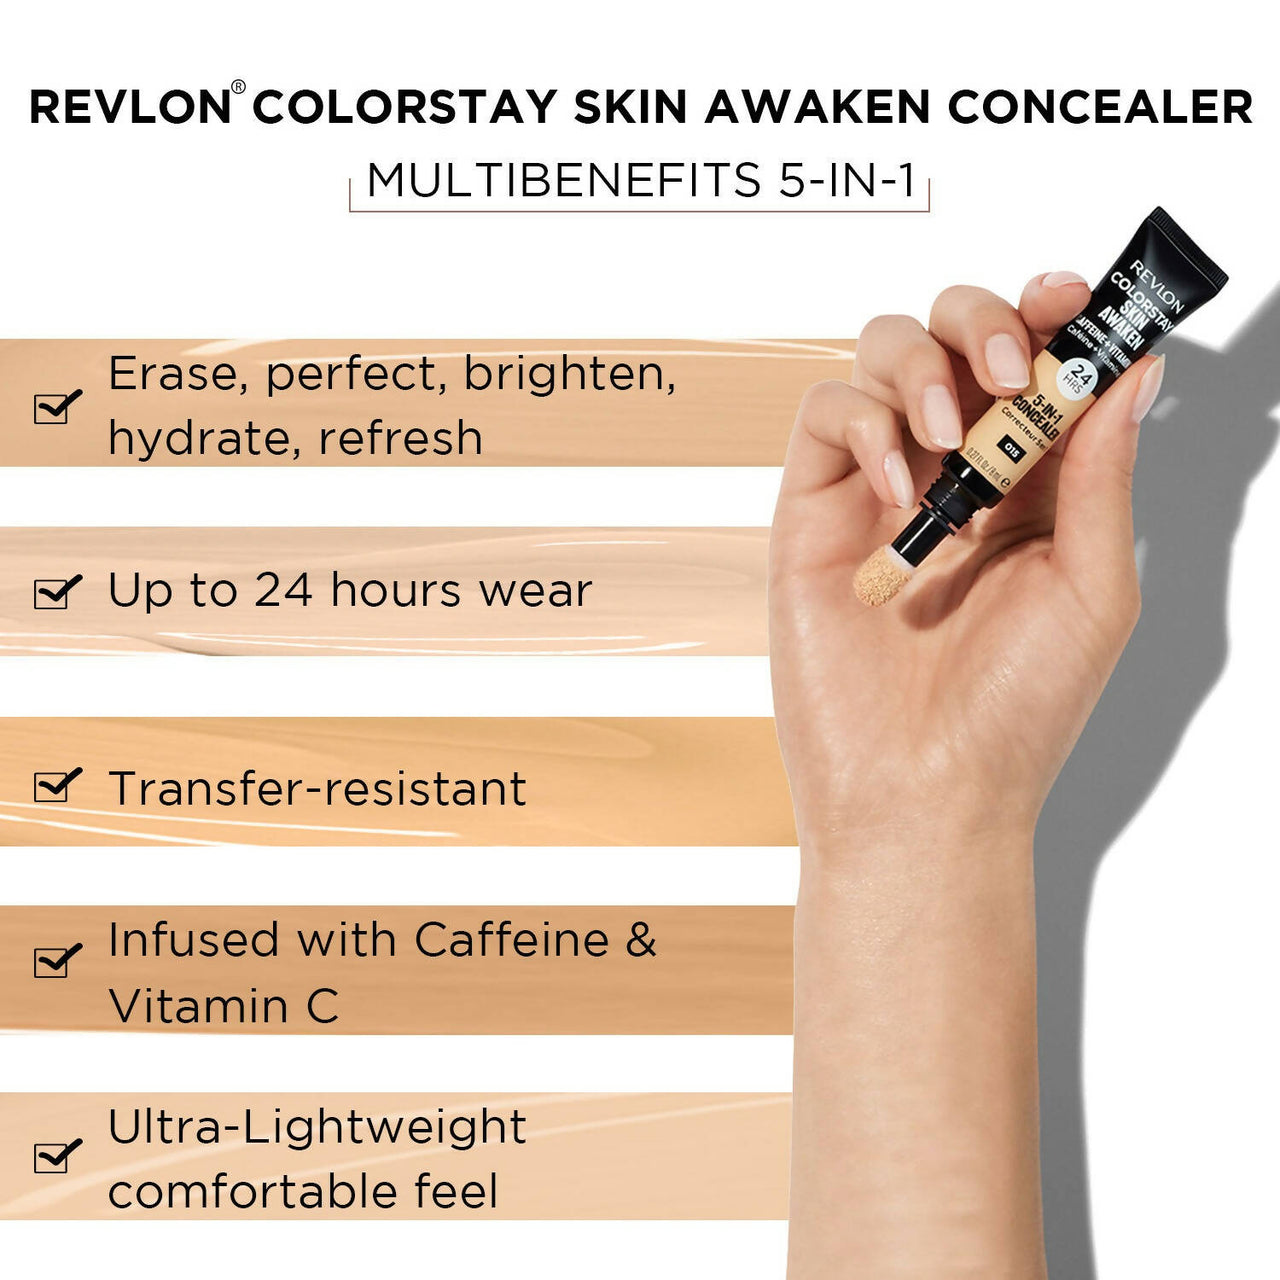 Revlon Colorstay Skin Awaken 5-in-1 Concealer - Fair - Distacart